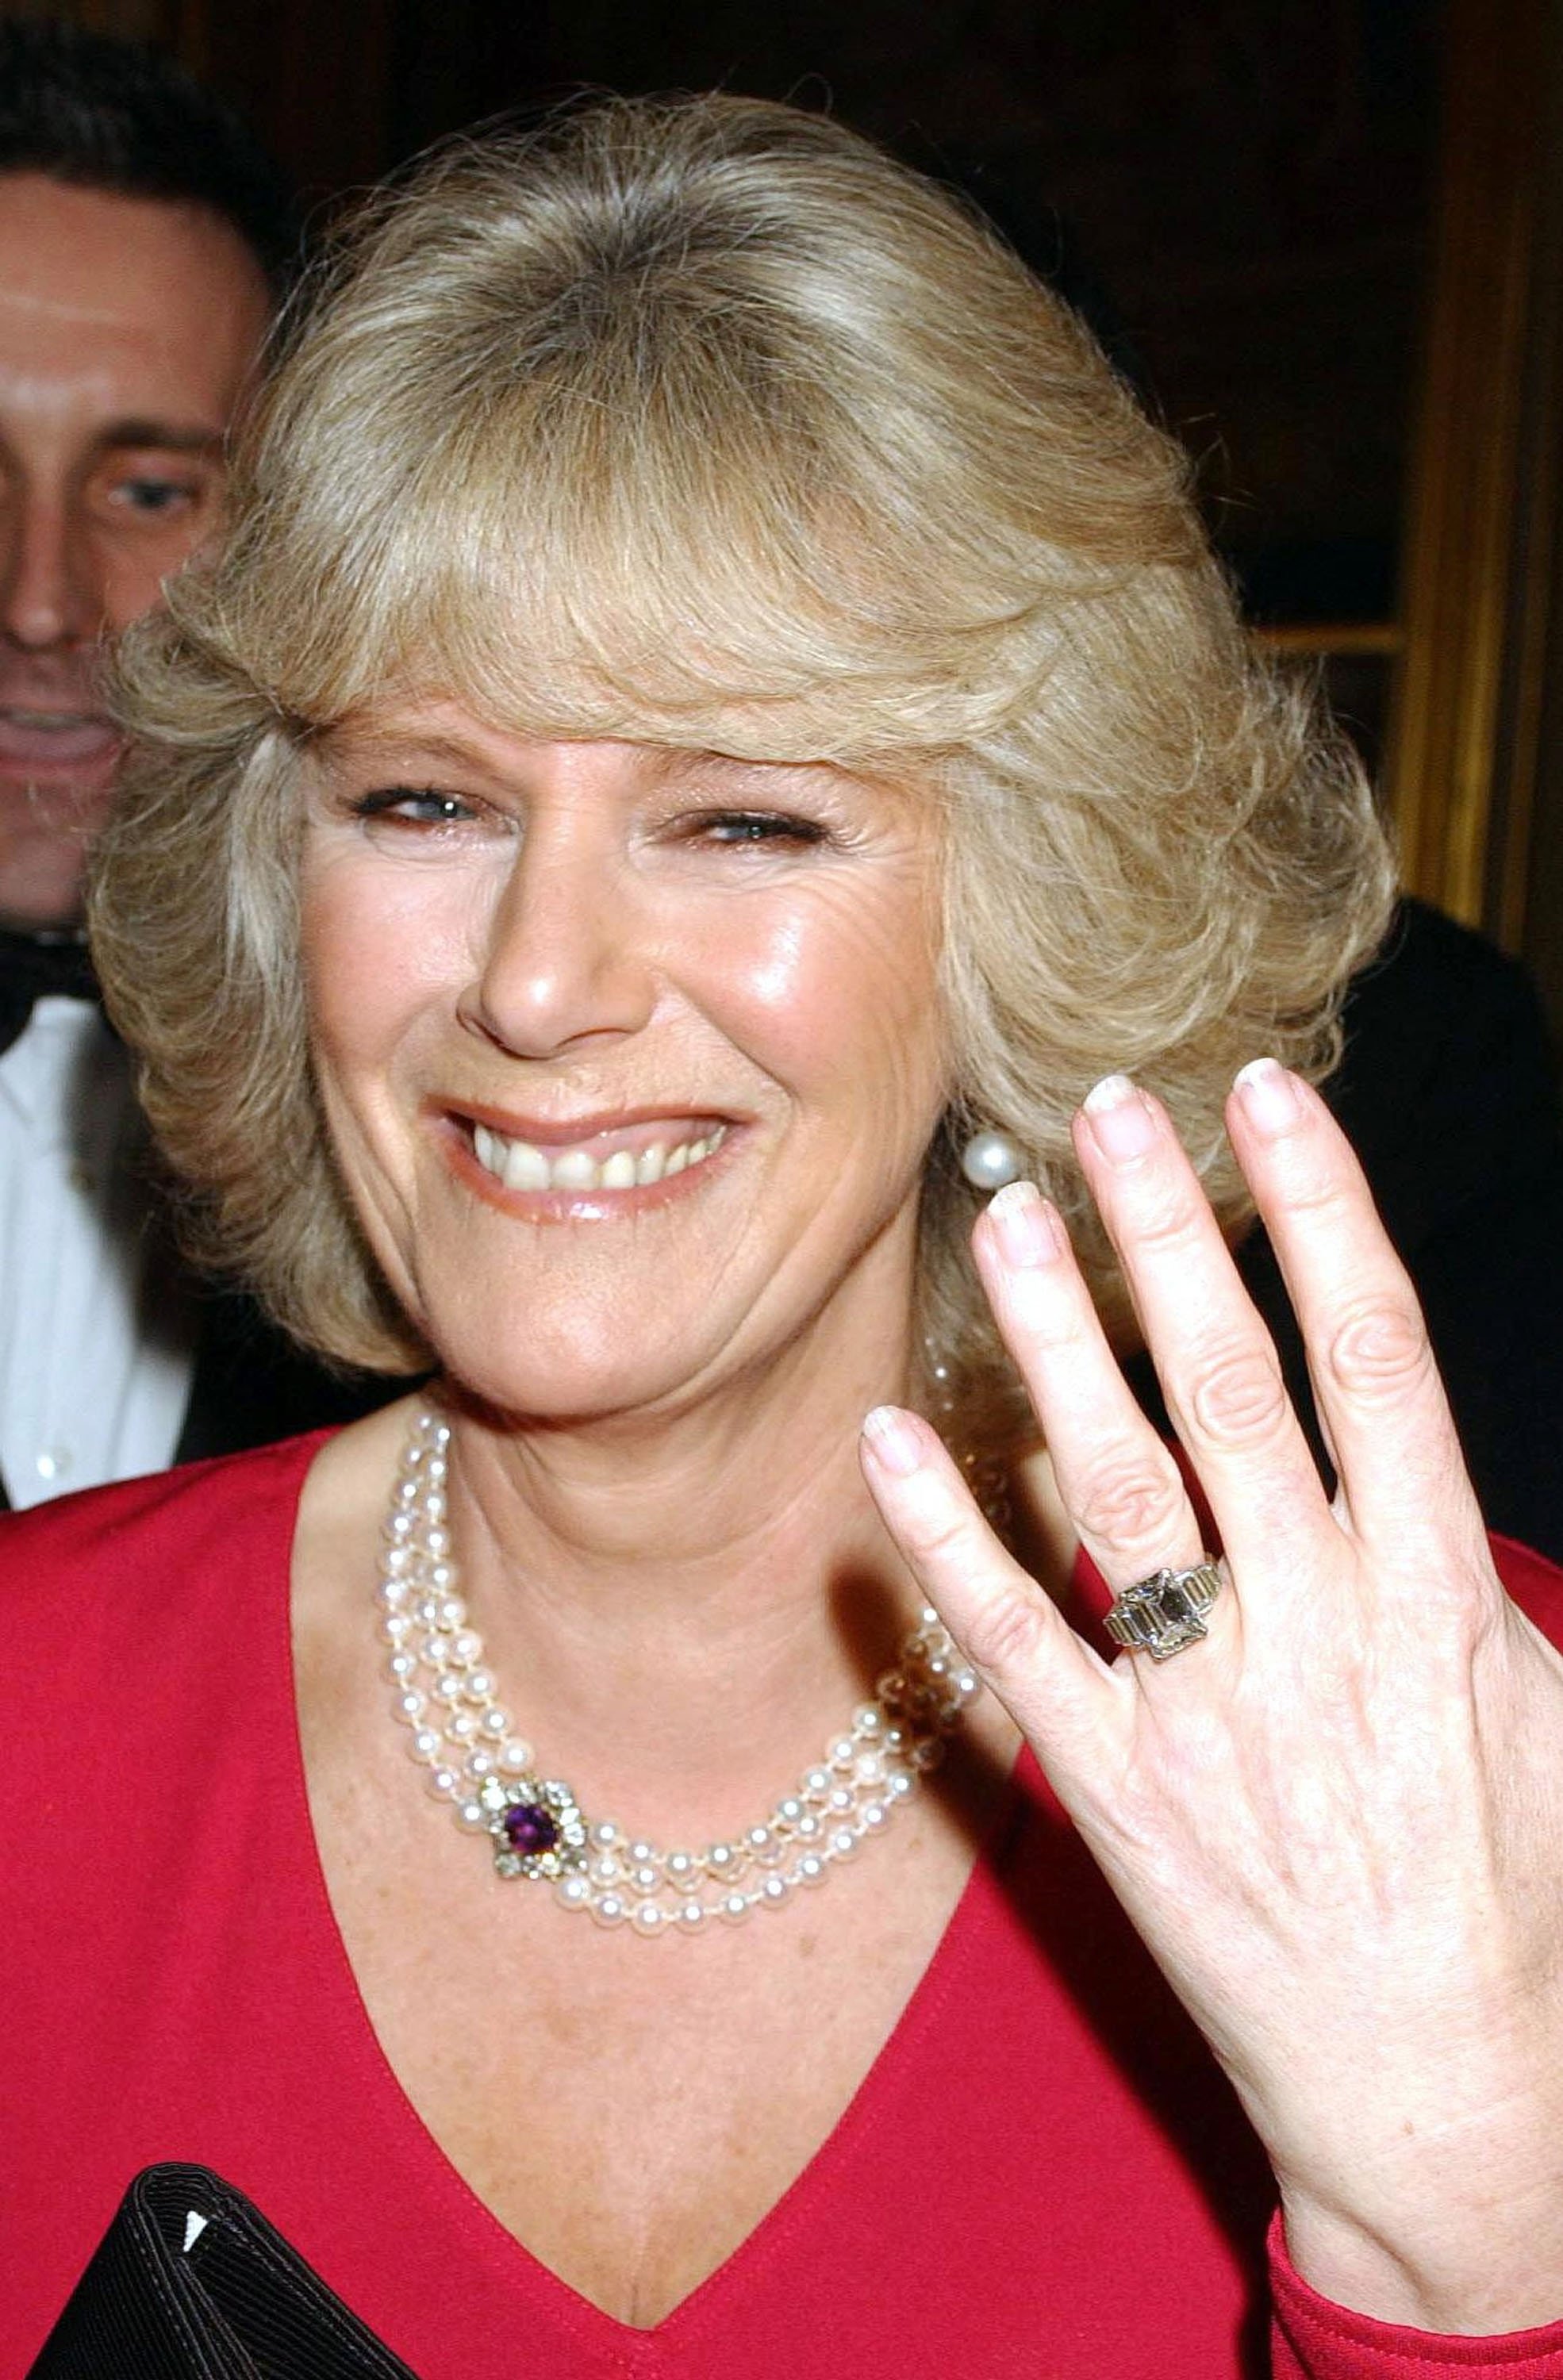 Camilla mostrando su anillo de compromiso a su llegada a una fiesta en el Castillo de Windsor el 10 de febrero de 2005 en Inglaterra. | Foto: Getty Images